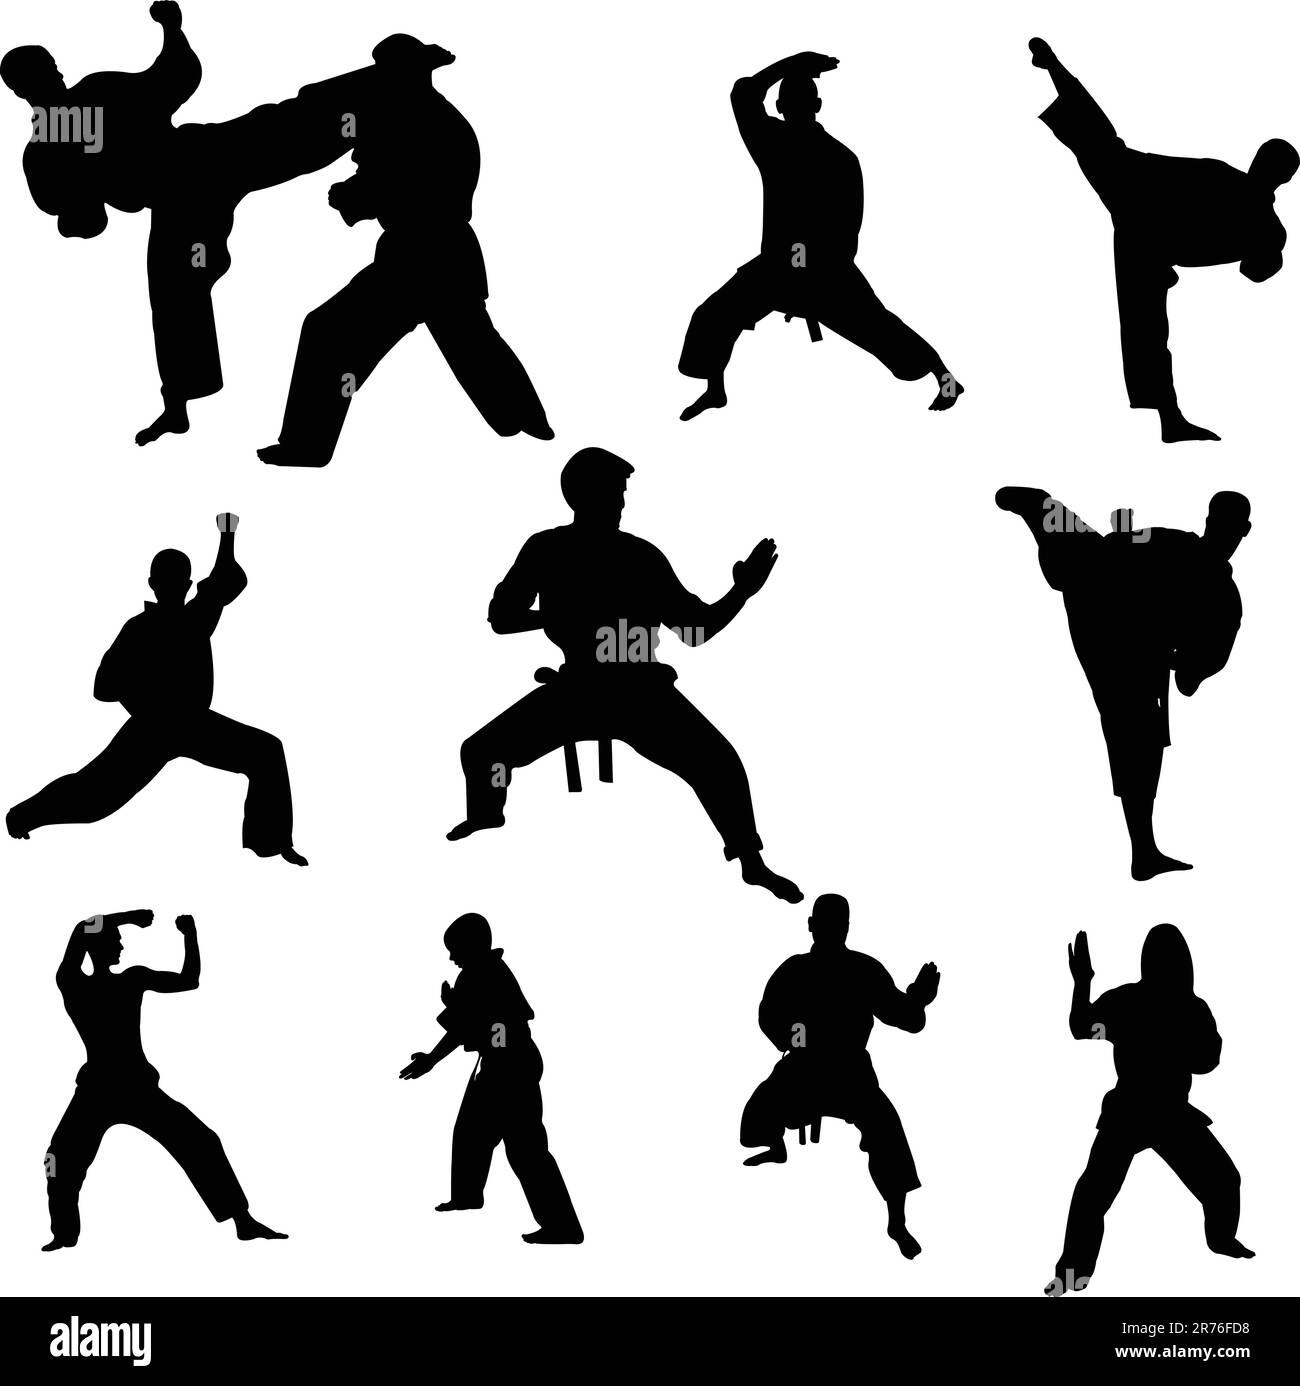 karate fighters - vector Stock Vector Image & Art - Alamy